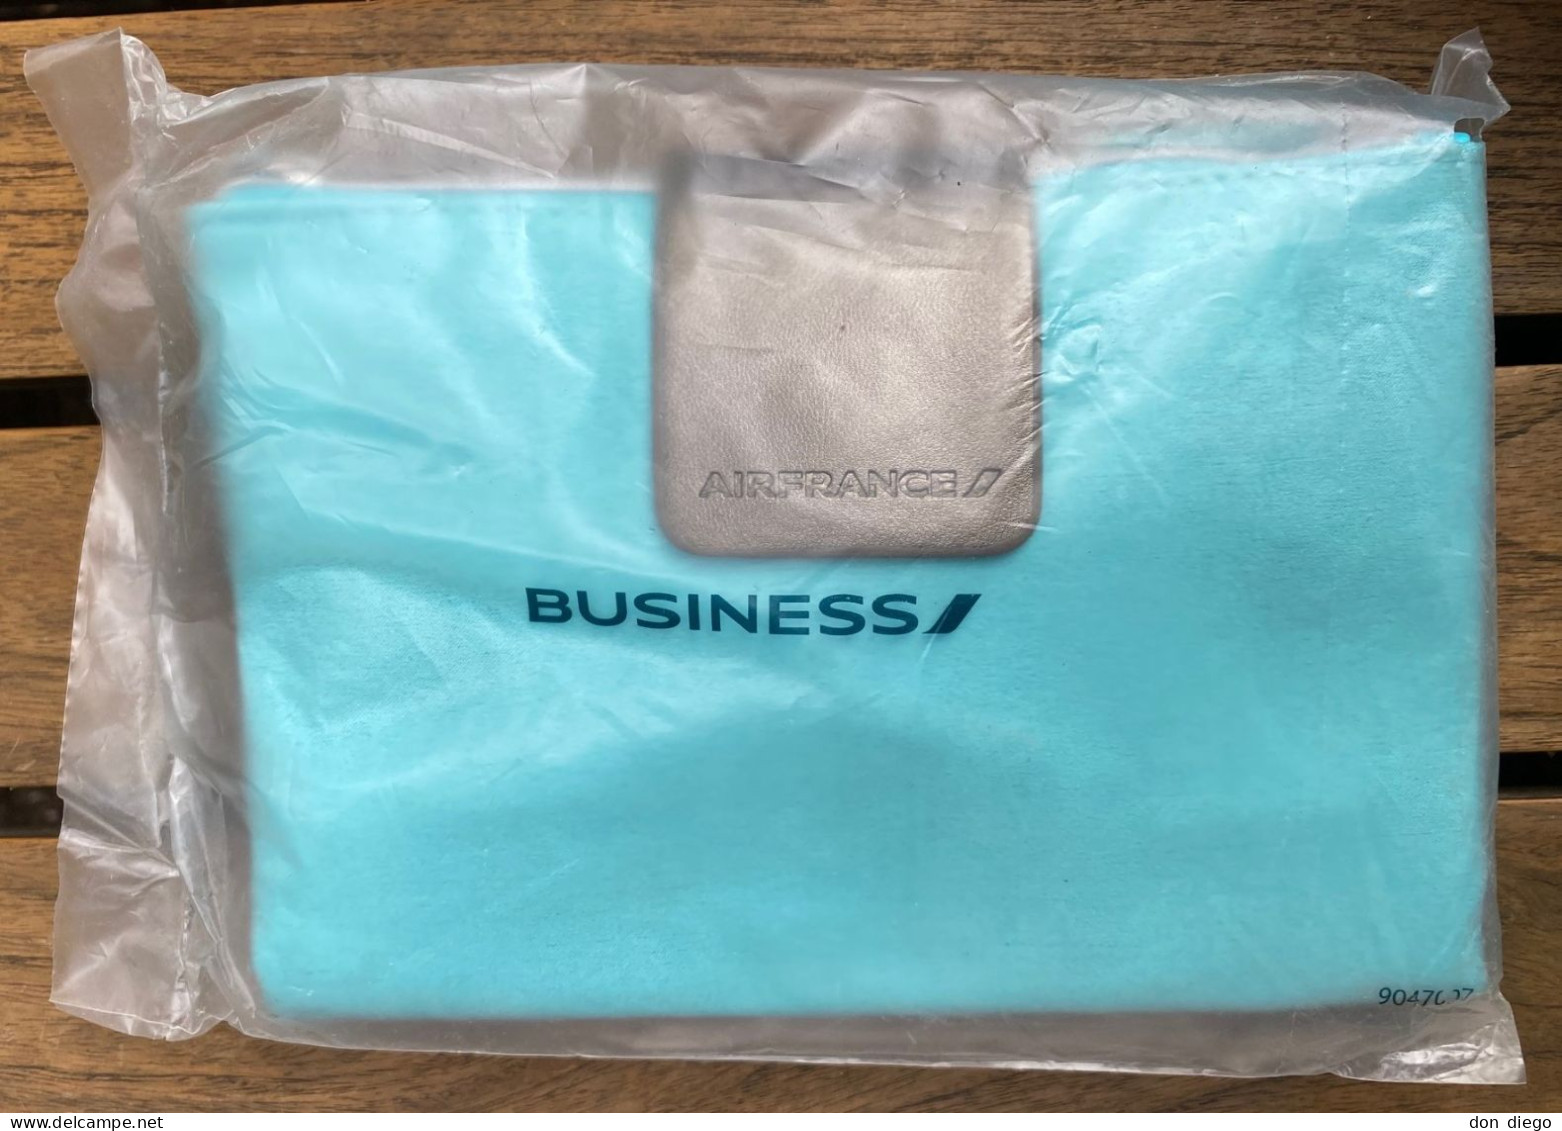 Trousse De Toilette Amenity Kit Bleue Blue Air France Business Class / Contenu Intact / Sous Emballage D'origine Scellé - Cadeaux Promotionnels